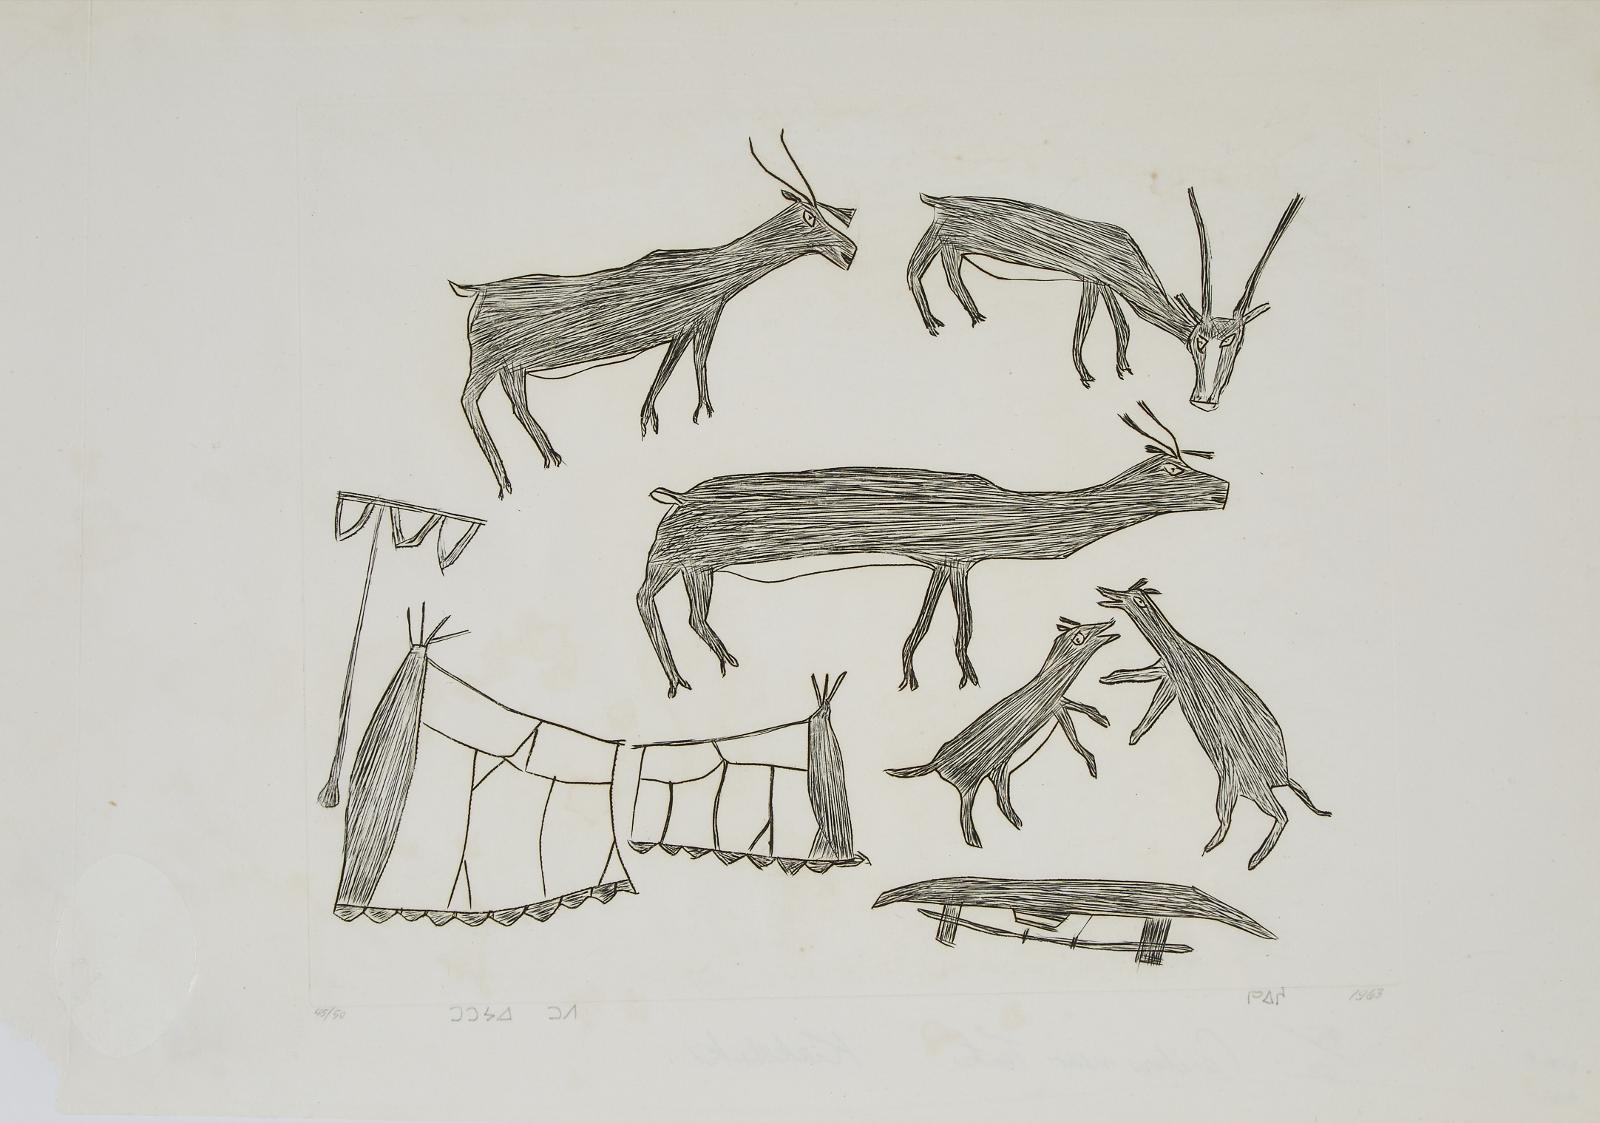 Kiakshuk (1886-1966) - Caribou Near Tents